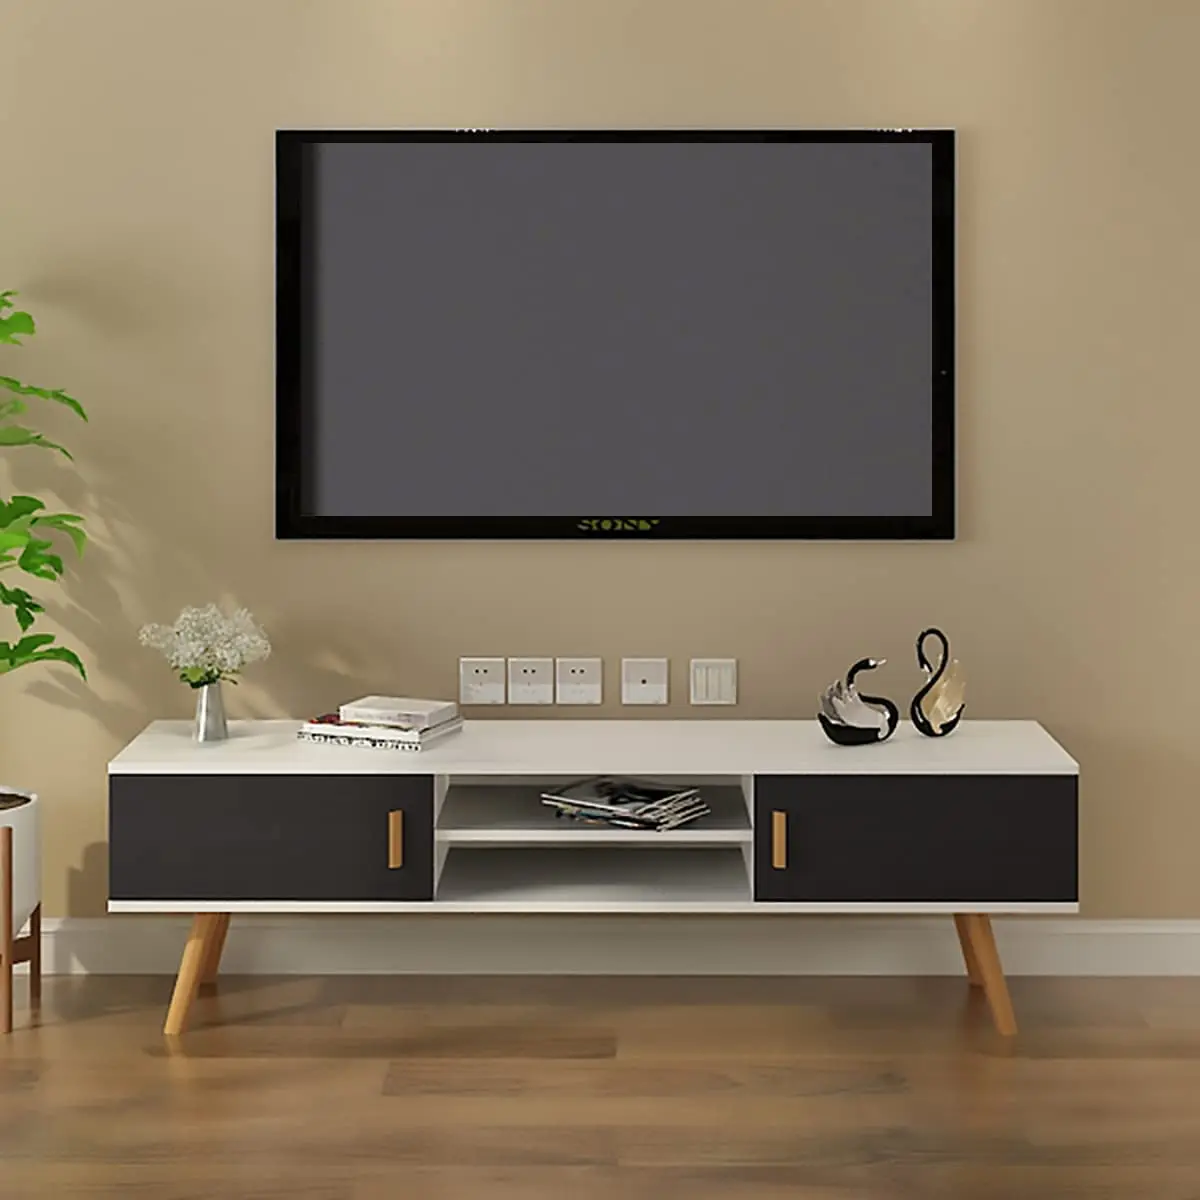 Schwarze Moderne Holz tv schränke Tv ständer Mit Lagerung Für Wohnzimmer  Schlafzimmer Büro   Buy Tv Schränke,Moderne Tv ständer,Holz Tv Steht  Product ...